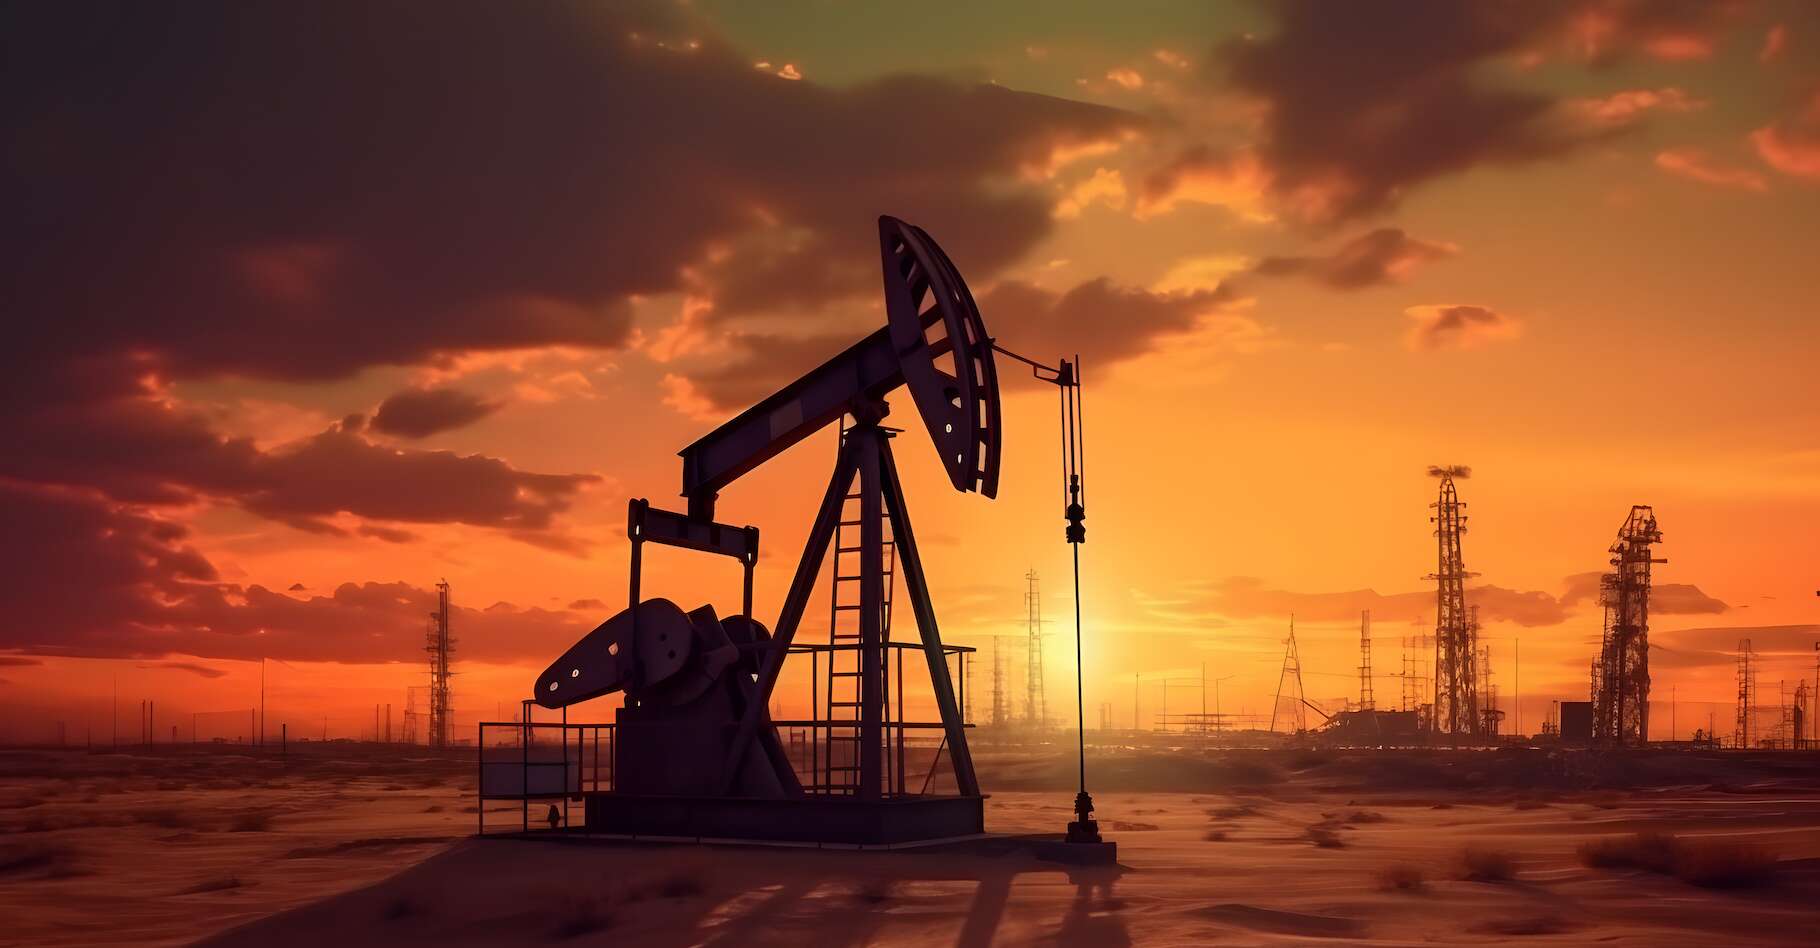 Comment les géants du pétrole se moquent ouvertement de nous